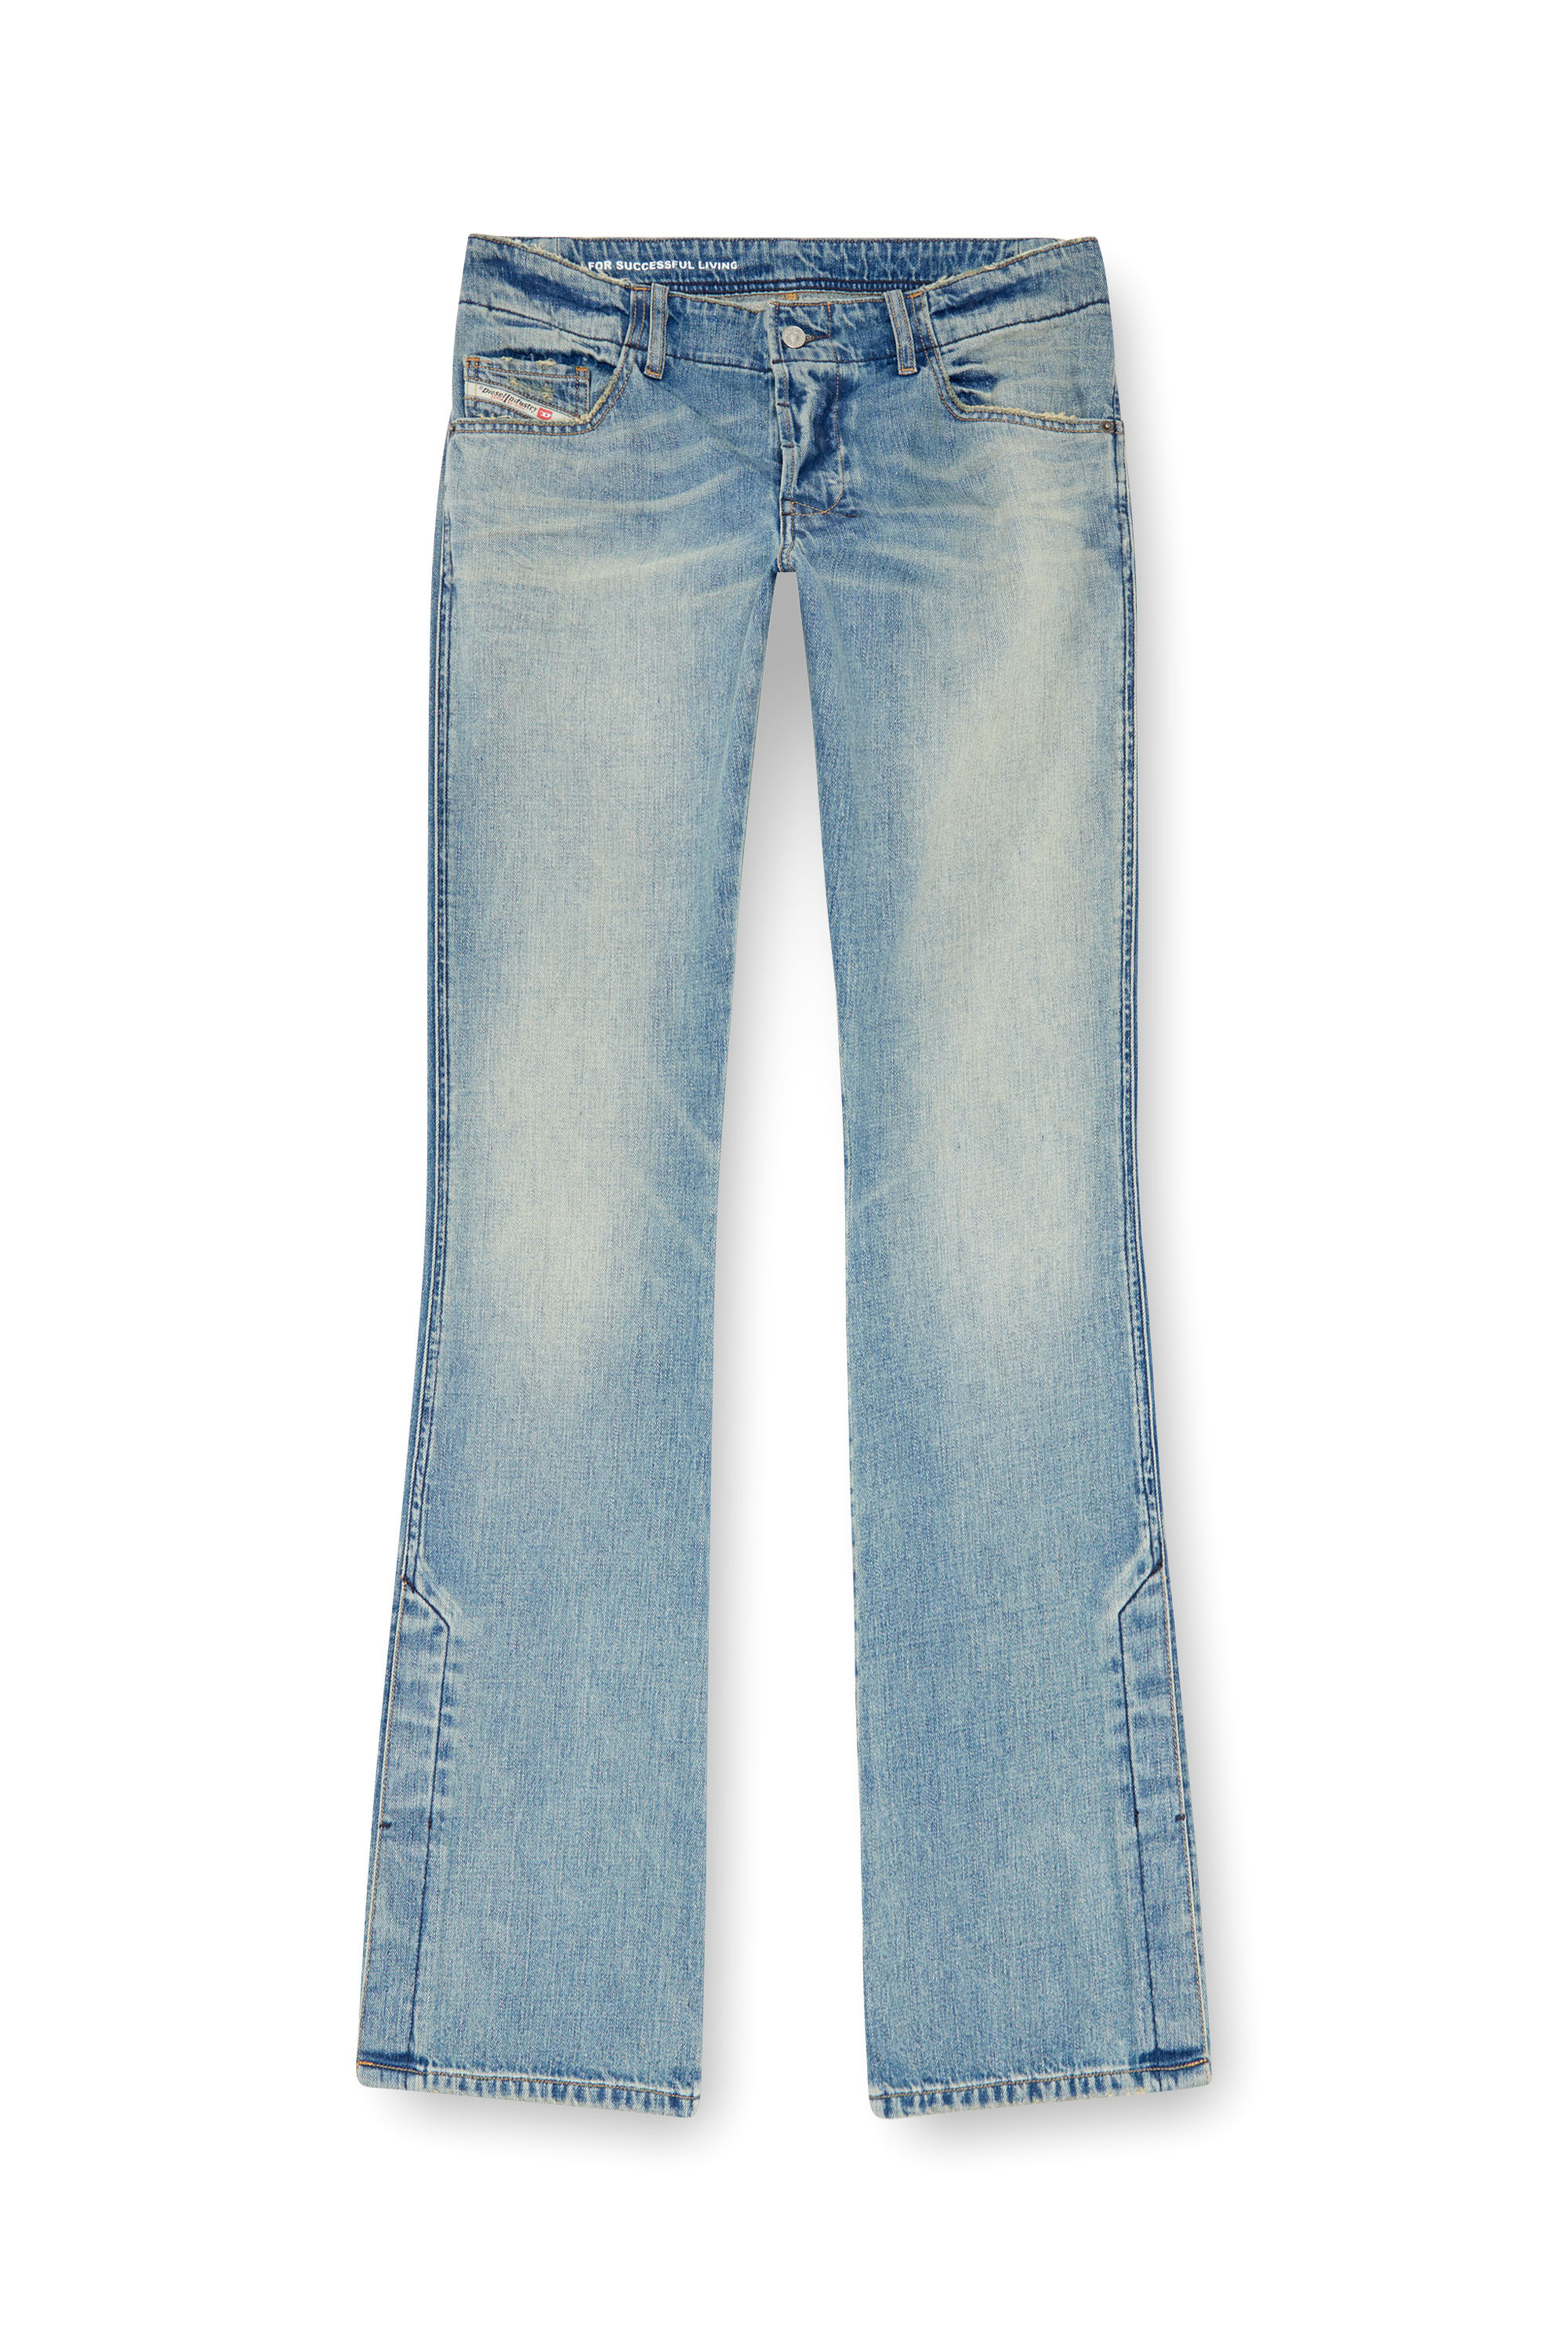 Diesel - Bootcut Jeans D-Backler 0GRDN, Hombre Bootcut Jeans - D-Backler in Azul marino - Image 3